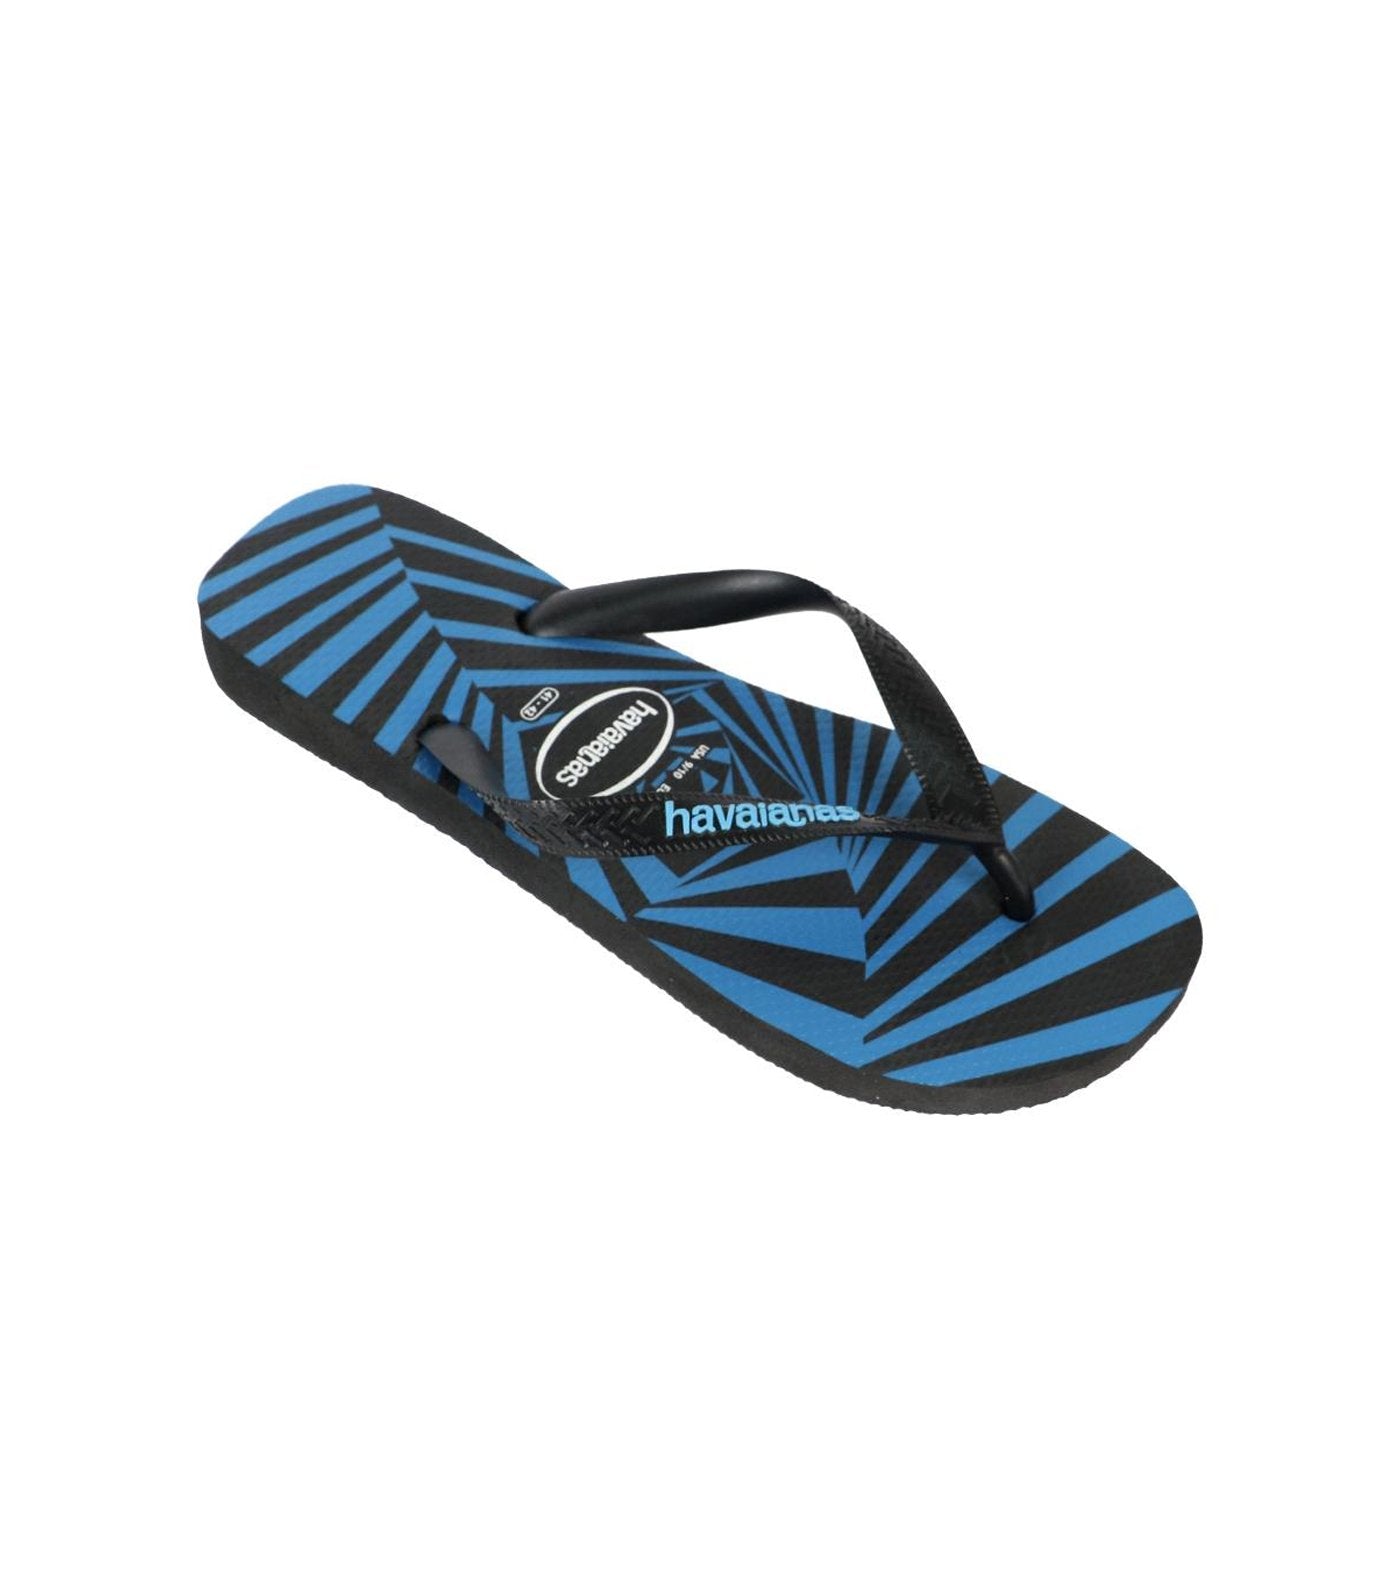 Havaianas 3D AUS Flip Flops - Black/Blue